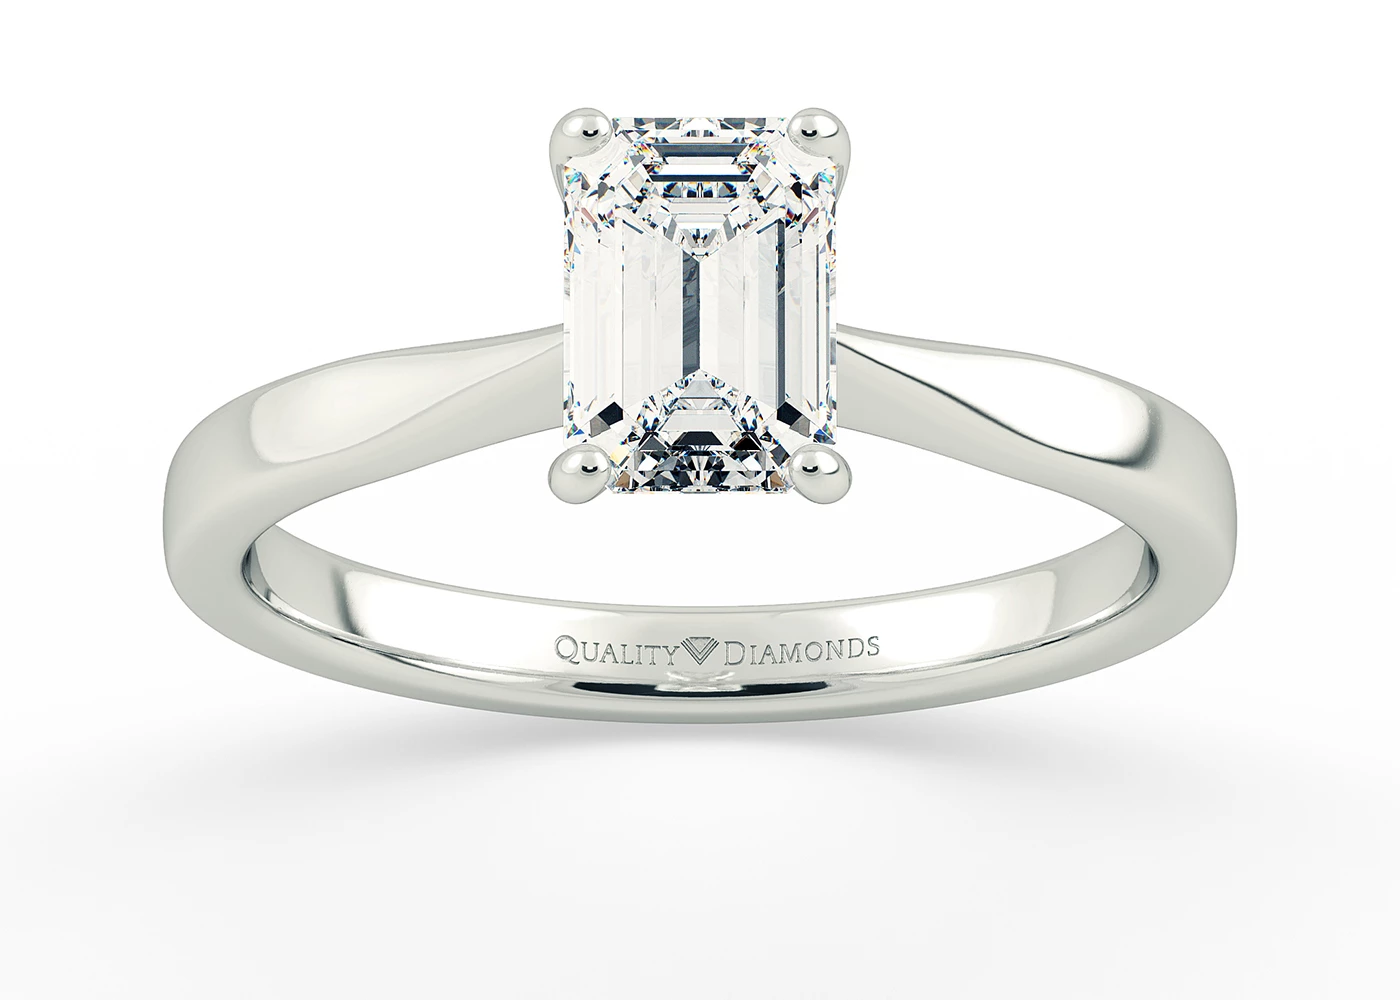 Emerald Beau Diamond Ring in Platinum